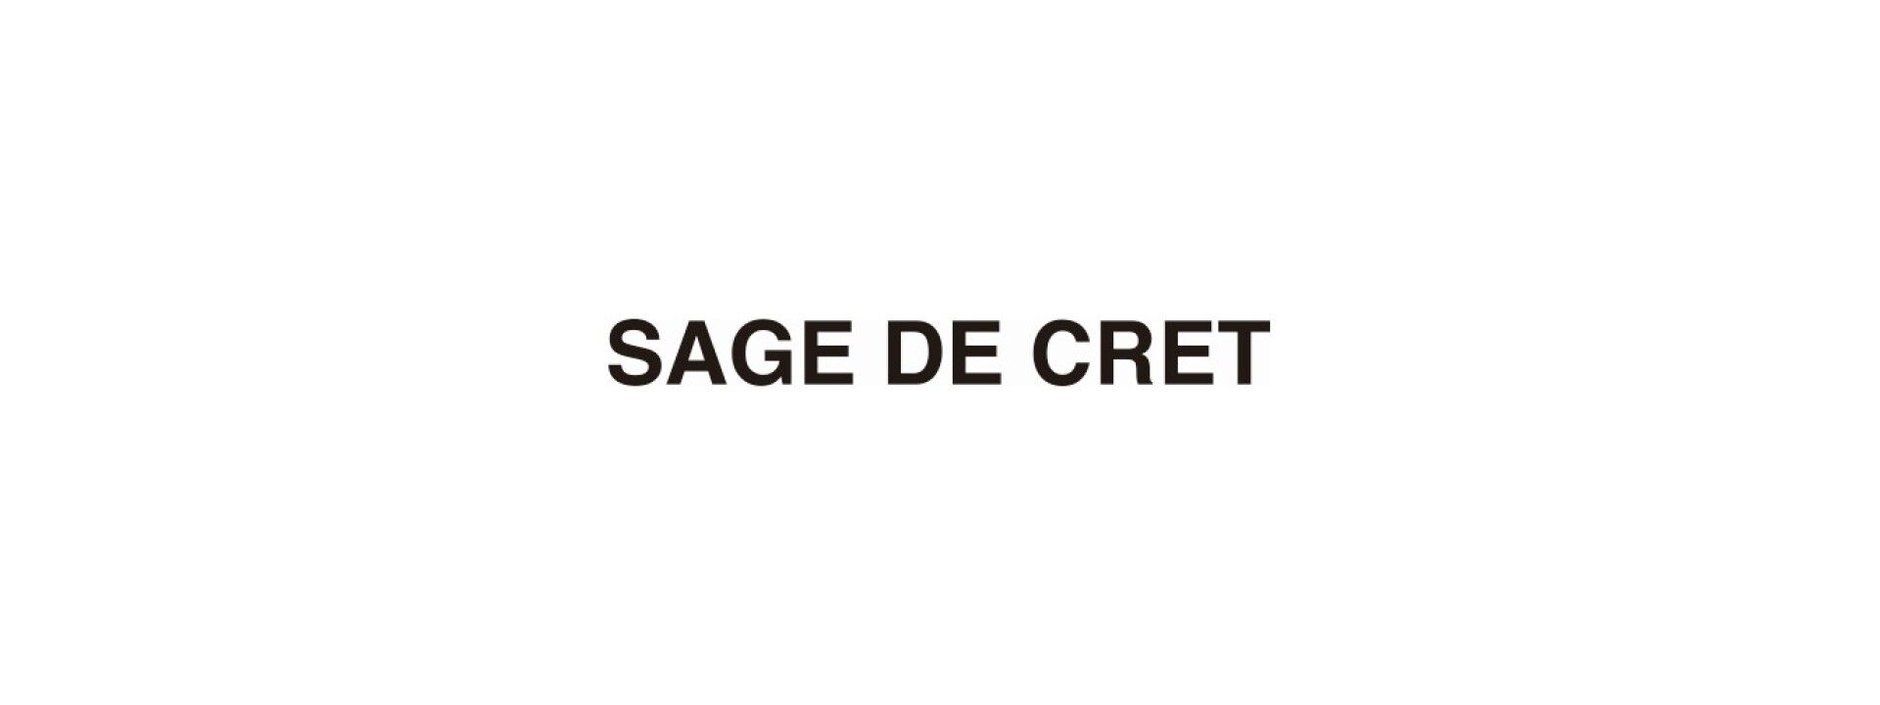 SAGE DE CRET